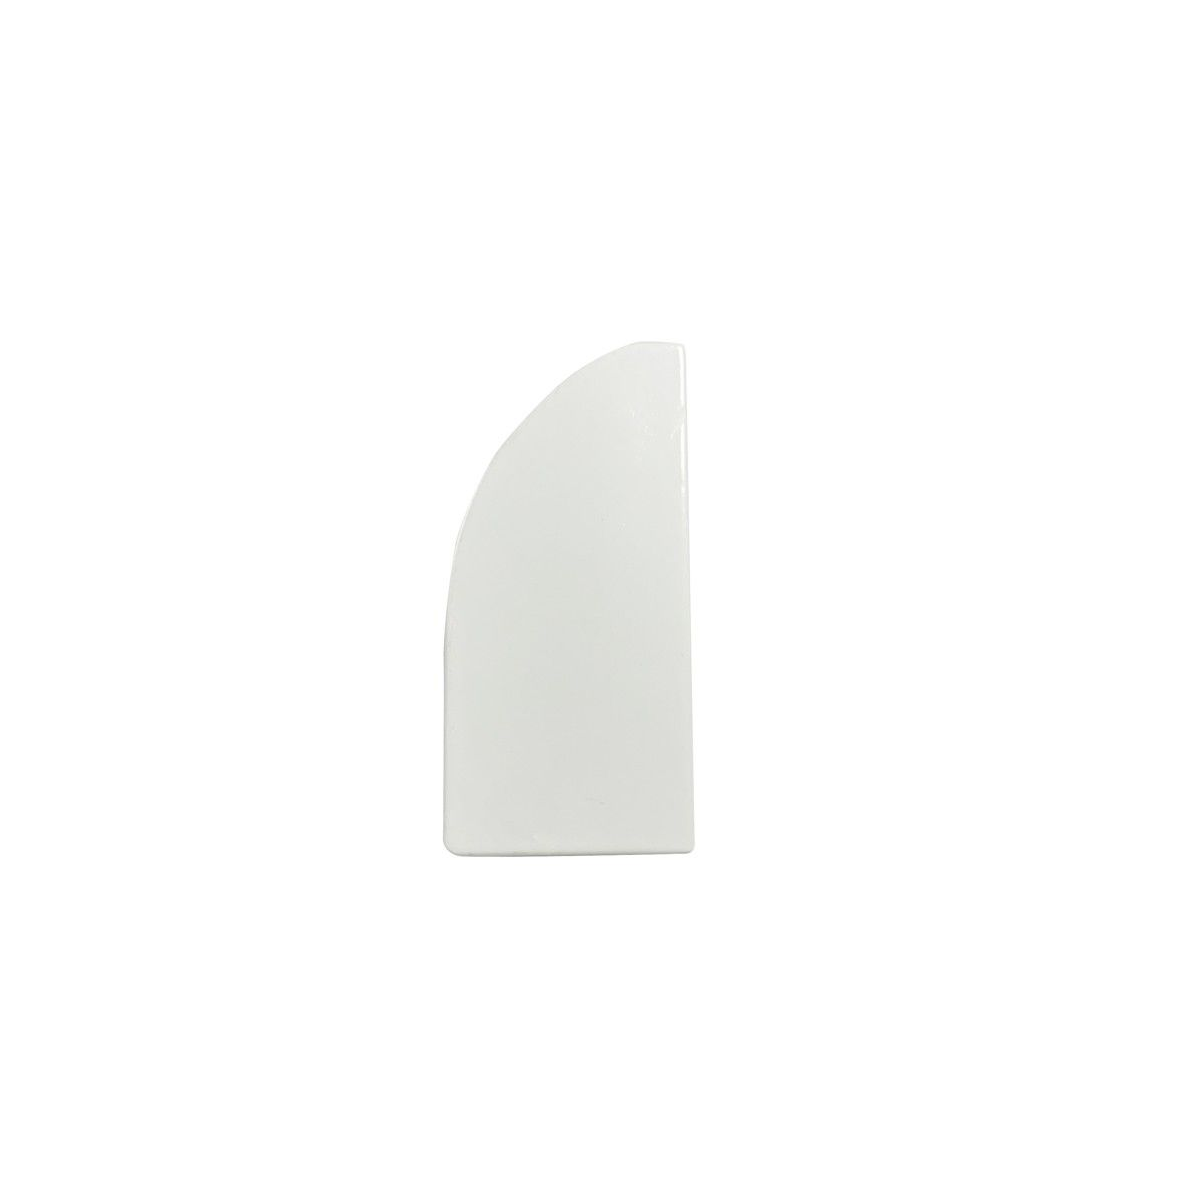 Endkappe für Aluminiumprofil 15,4 x 32,2 mm - Weiß - Abdeckung für LED Streifen - Schutz